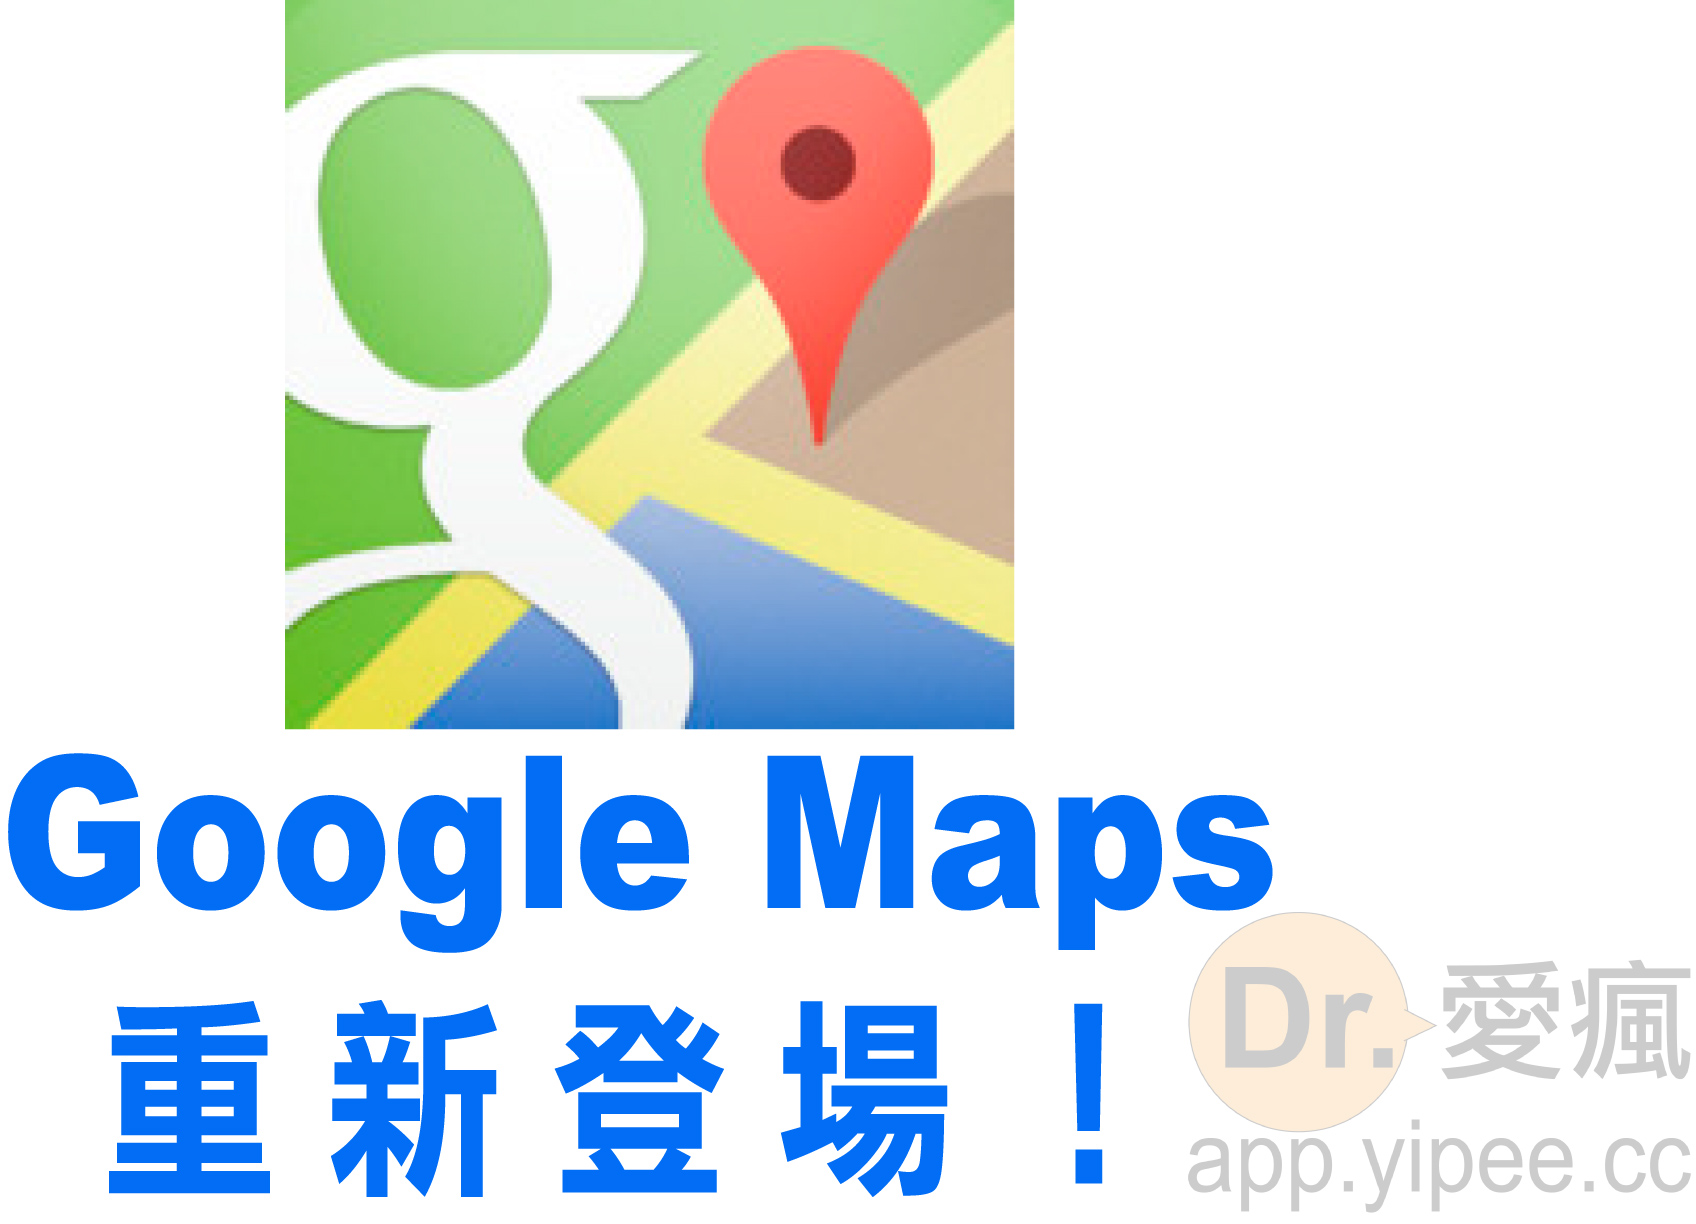 大家等待已久的 iOS 版本的 Google 官方地圖 APP 正式登陸 APP Store 上了。